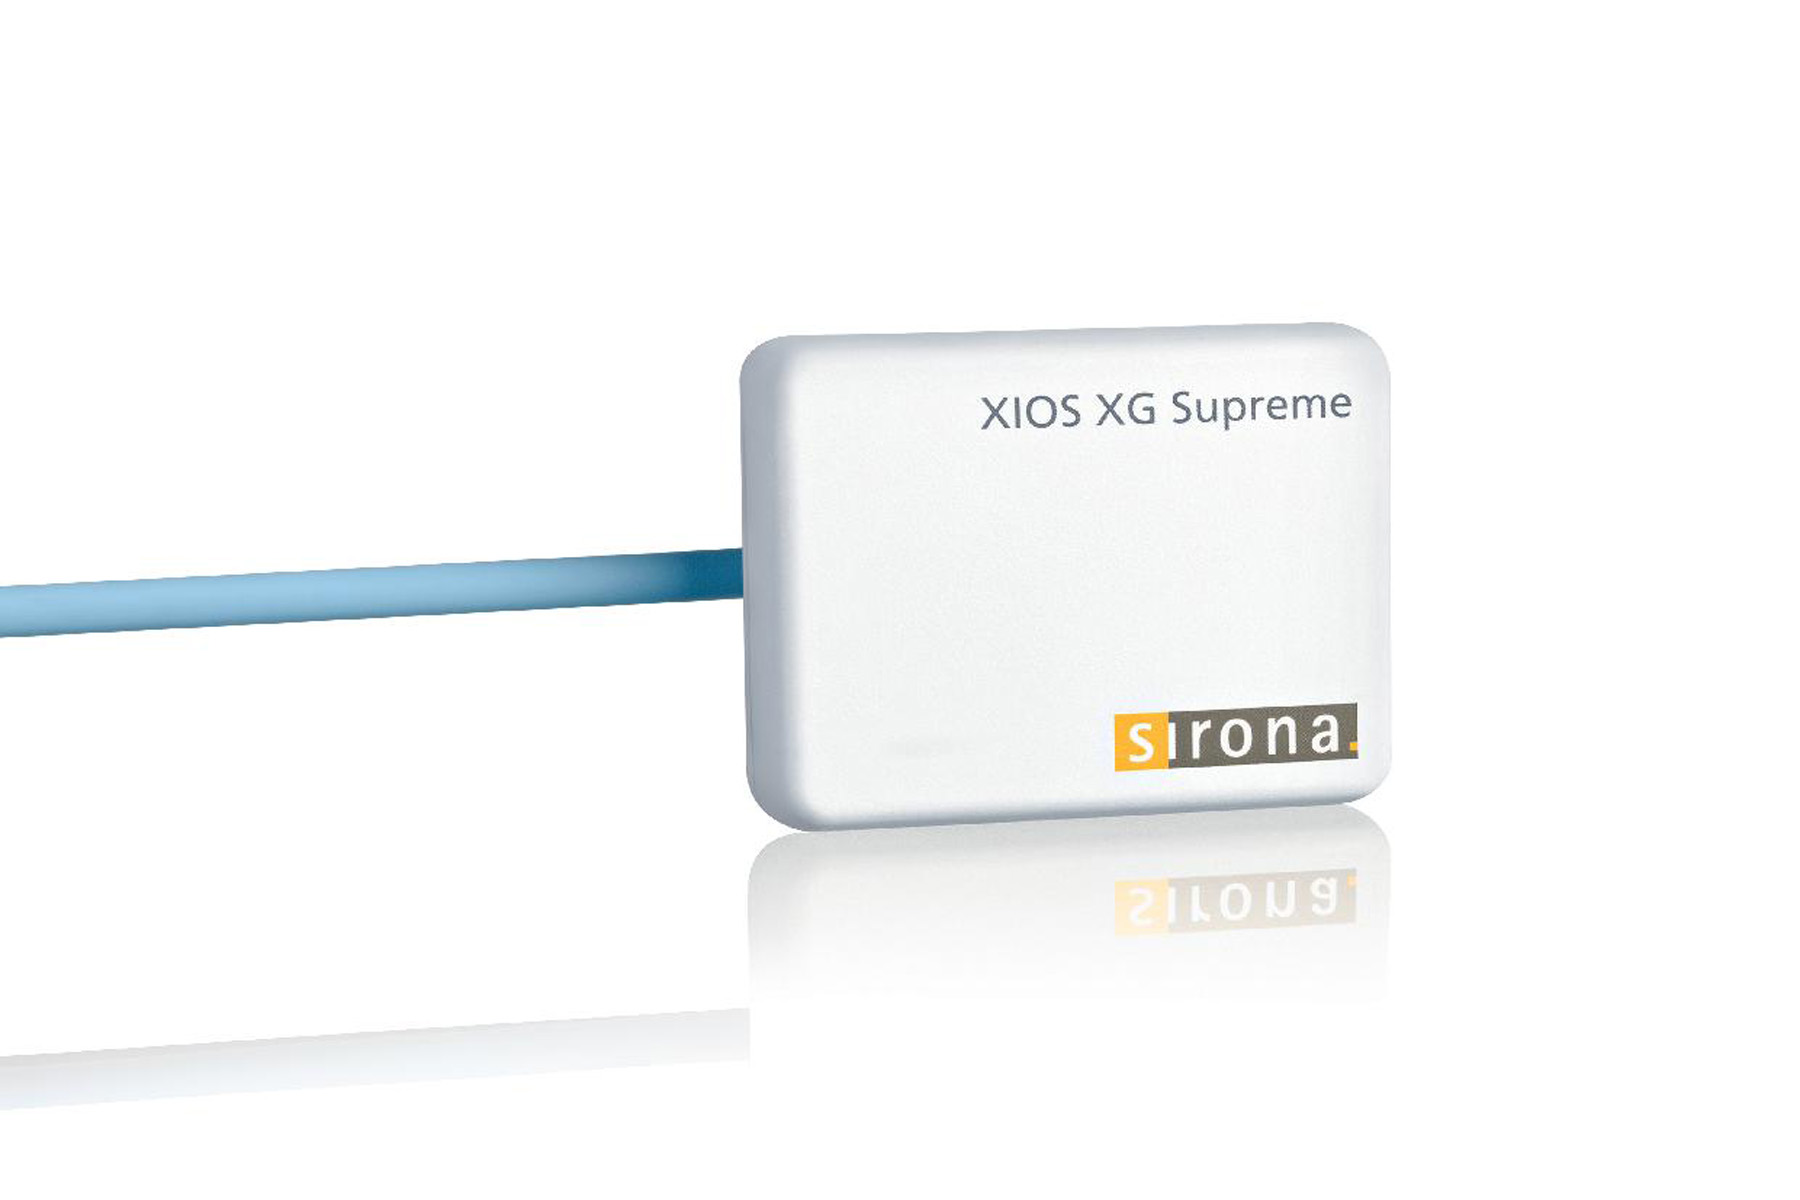 XIOS XG Supreme WiFi module with sensor size 2